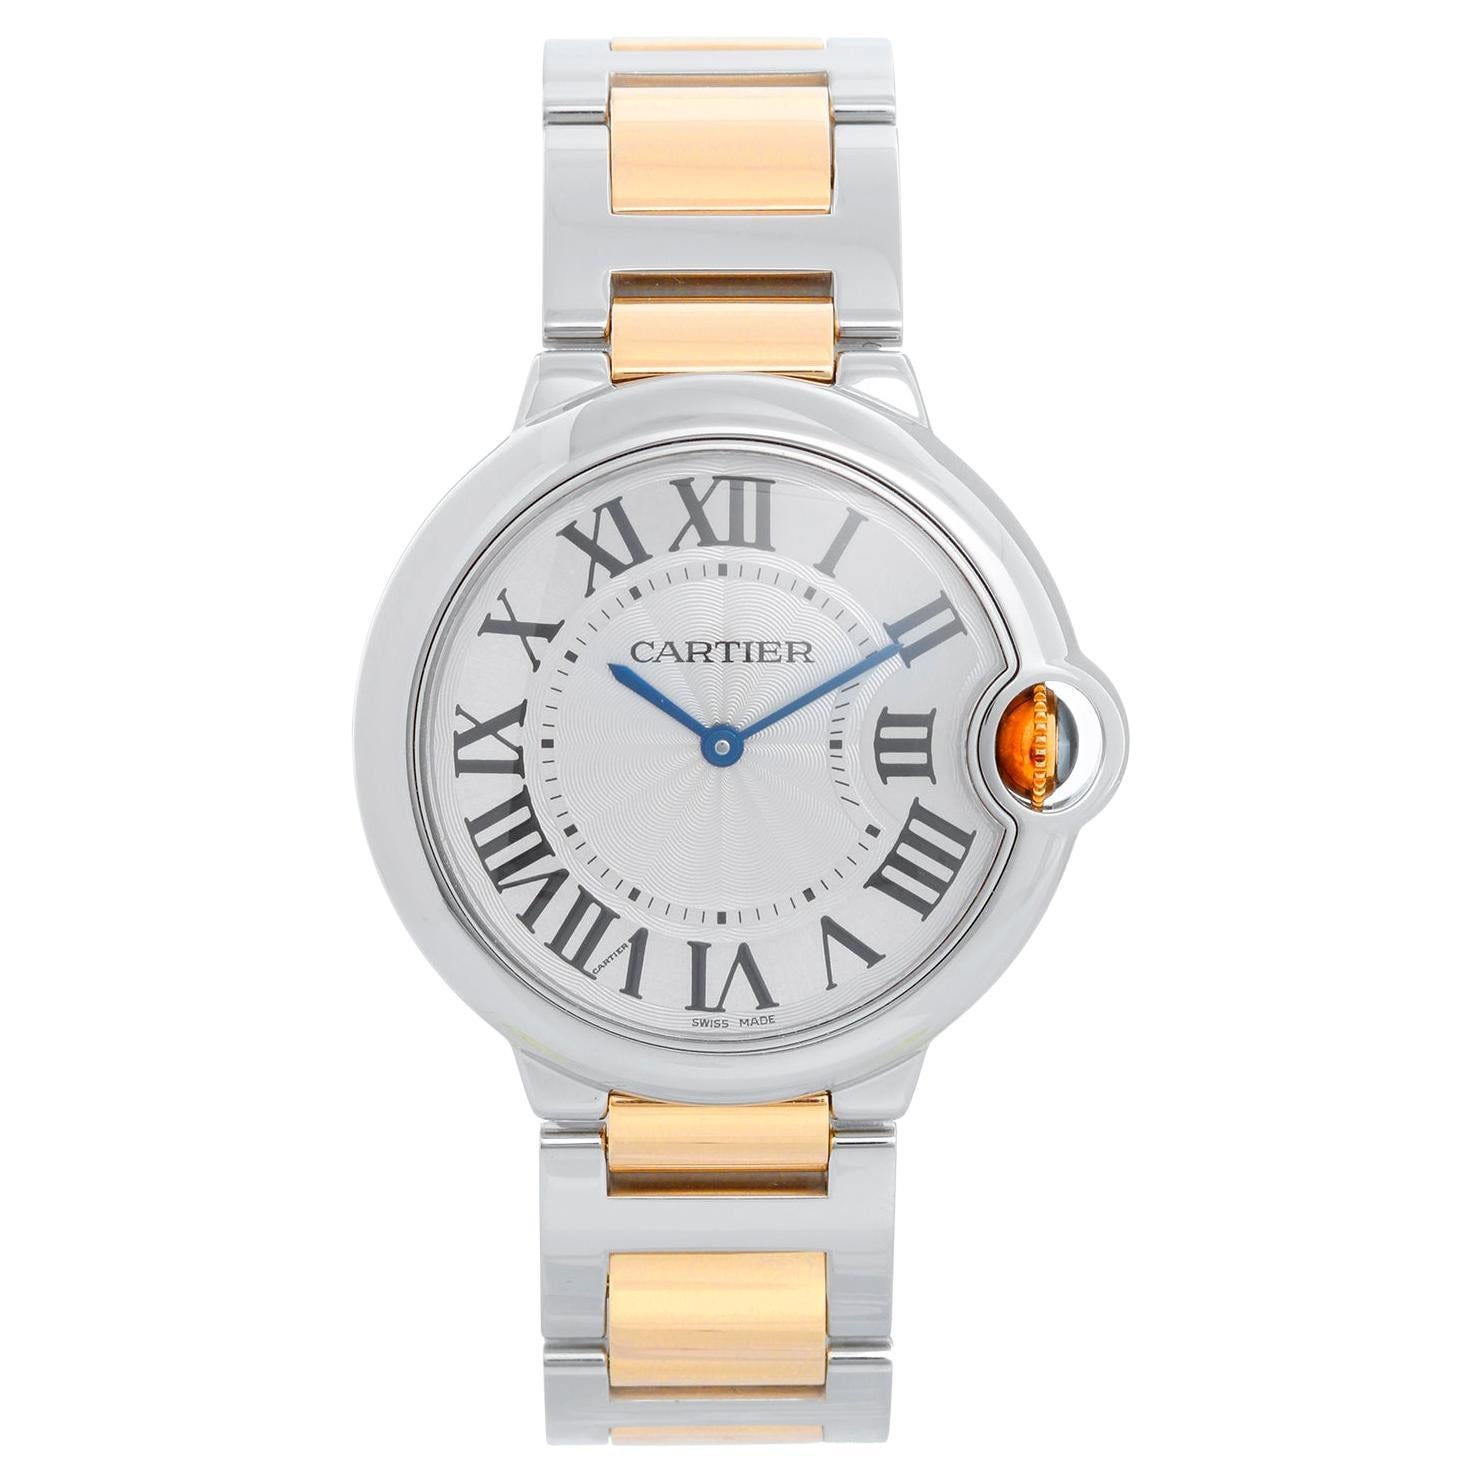 Cartier Ballon Bleu Midsize Stainless Steel Watch W69011Z4 3005 For Sale